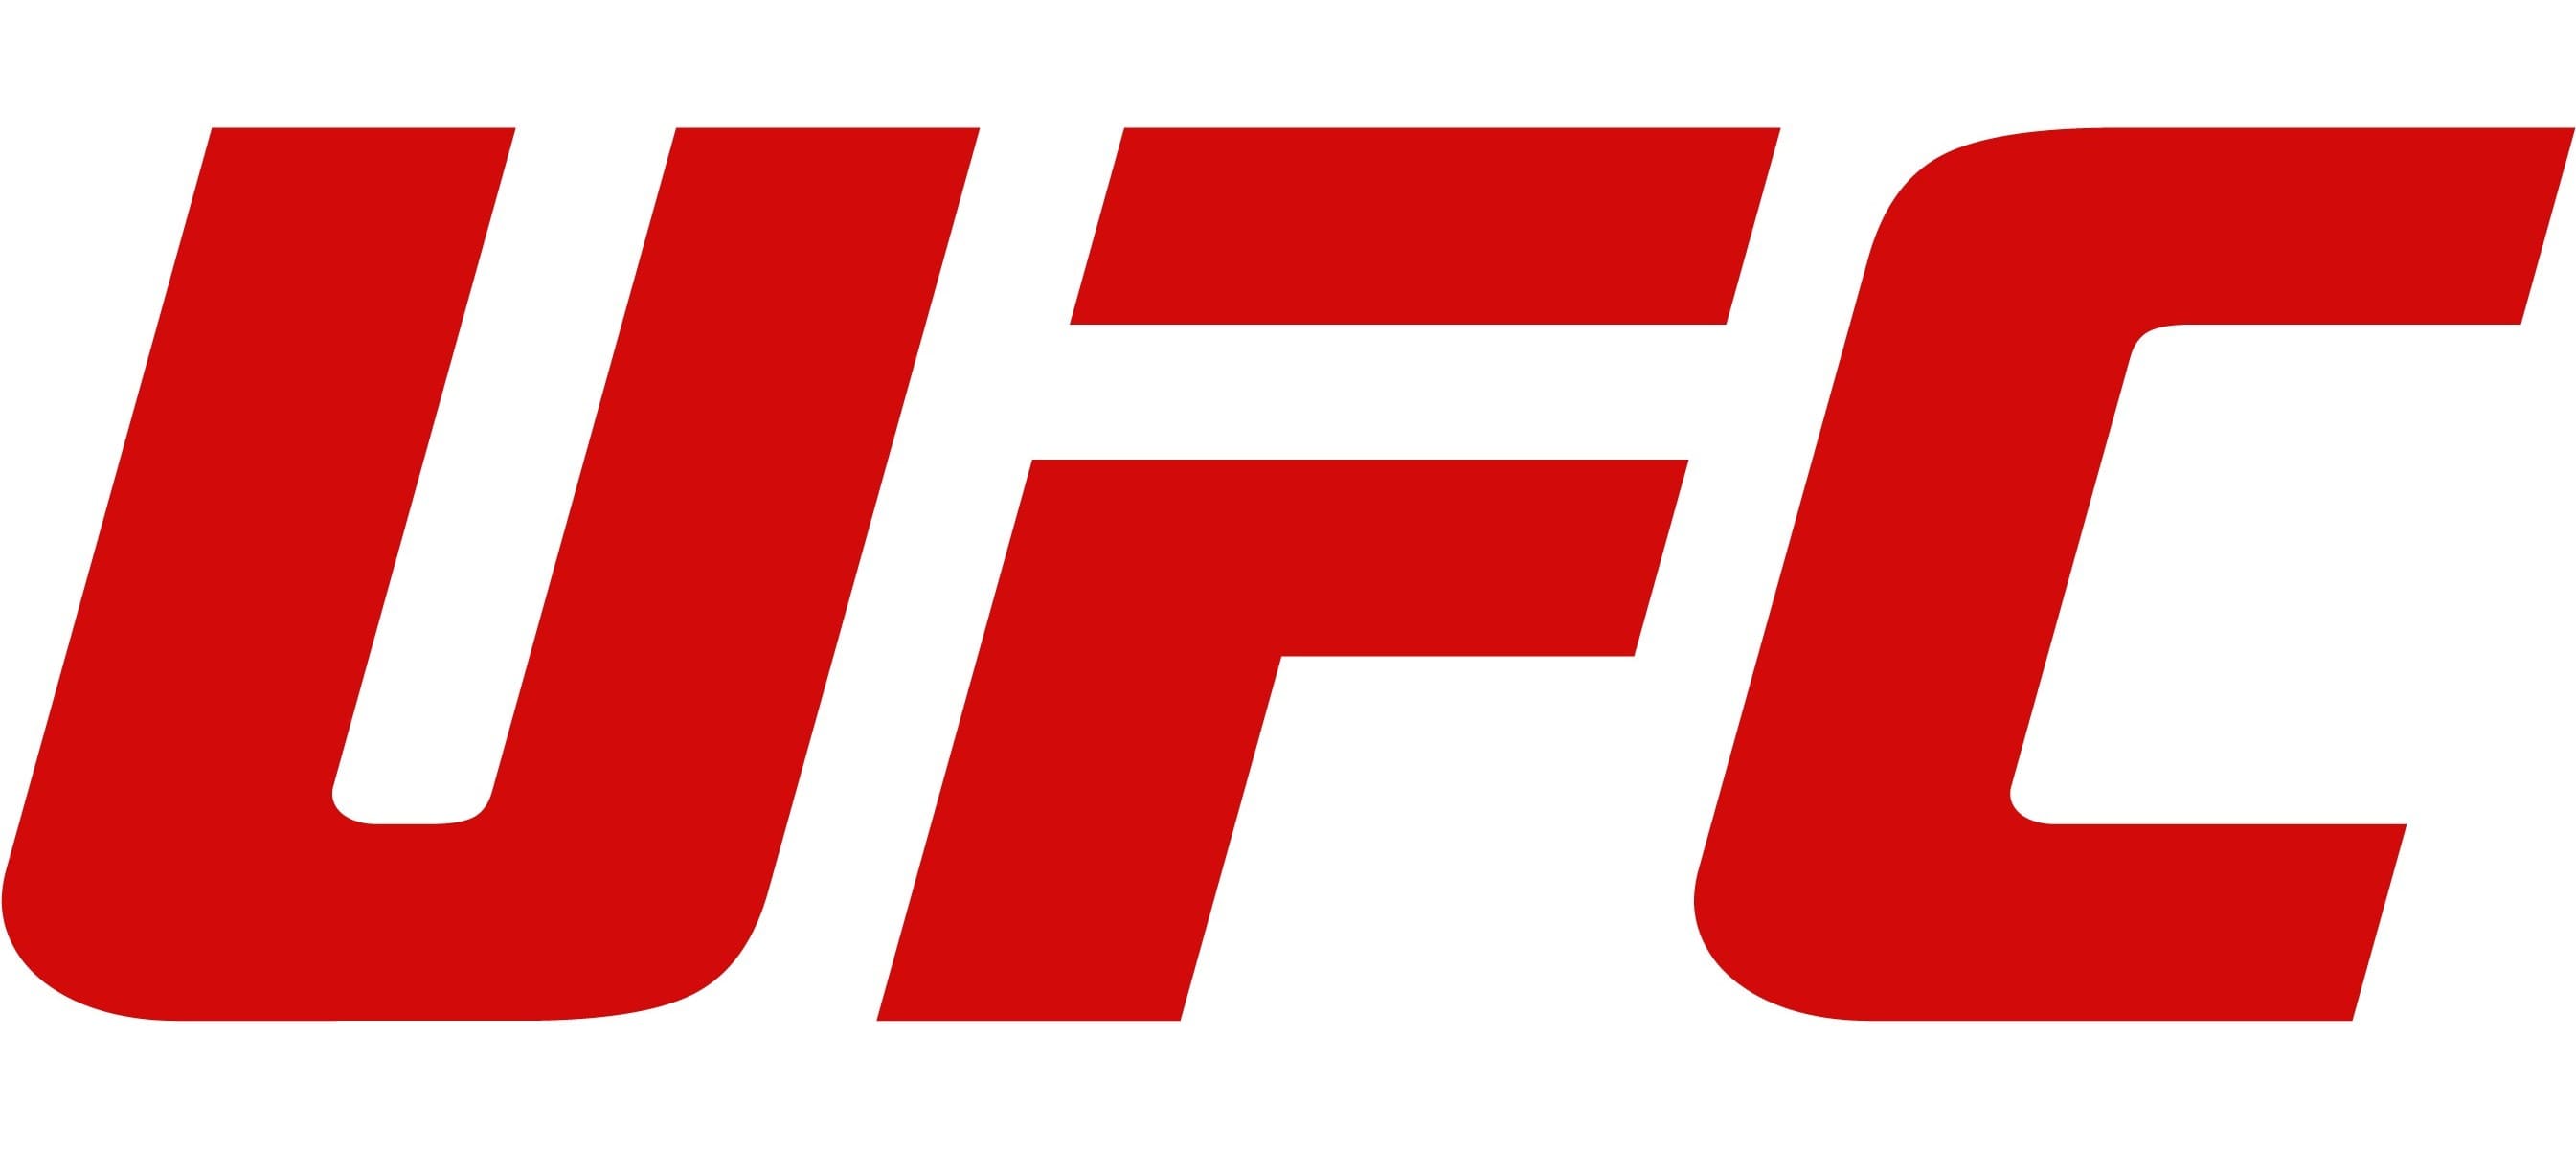 ufc logo poster